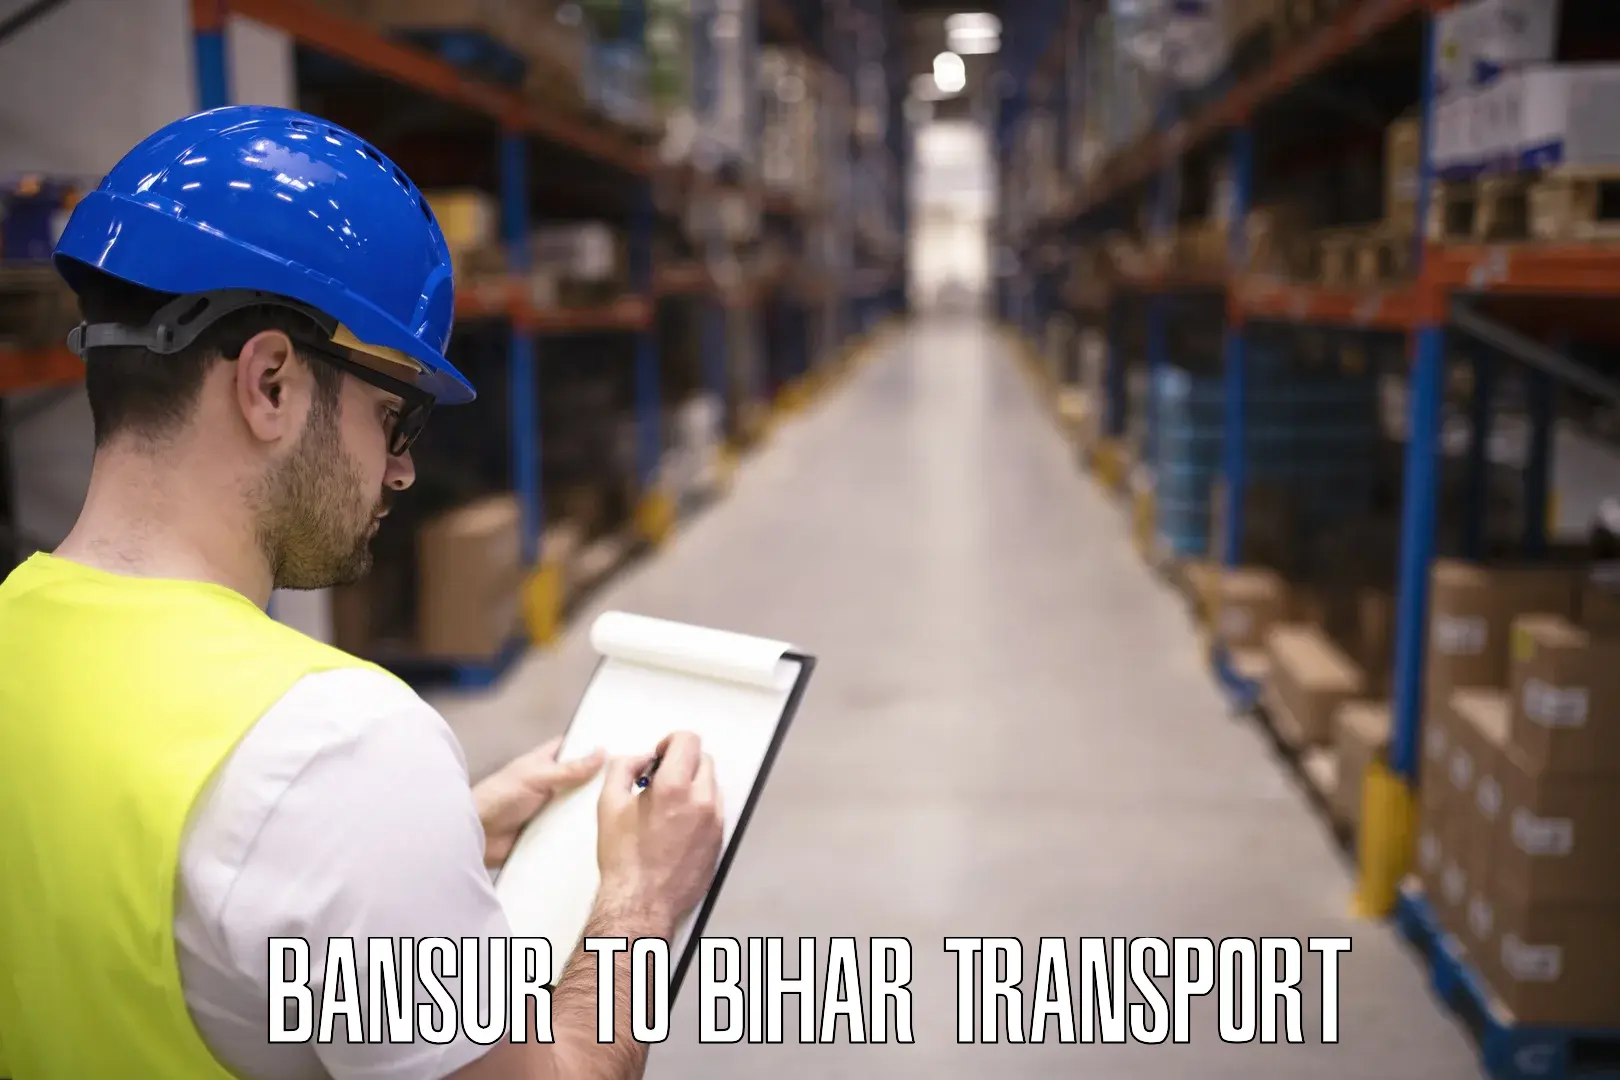 Vehicle transport services Bansur to Buxar